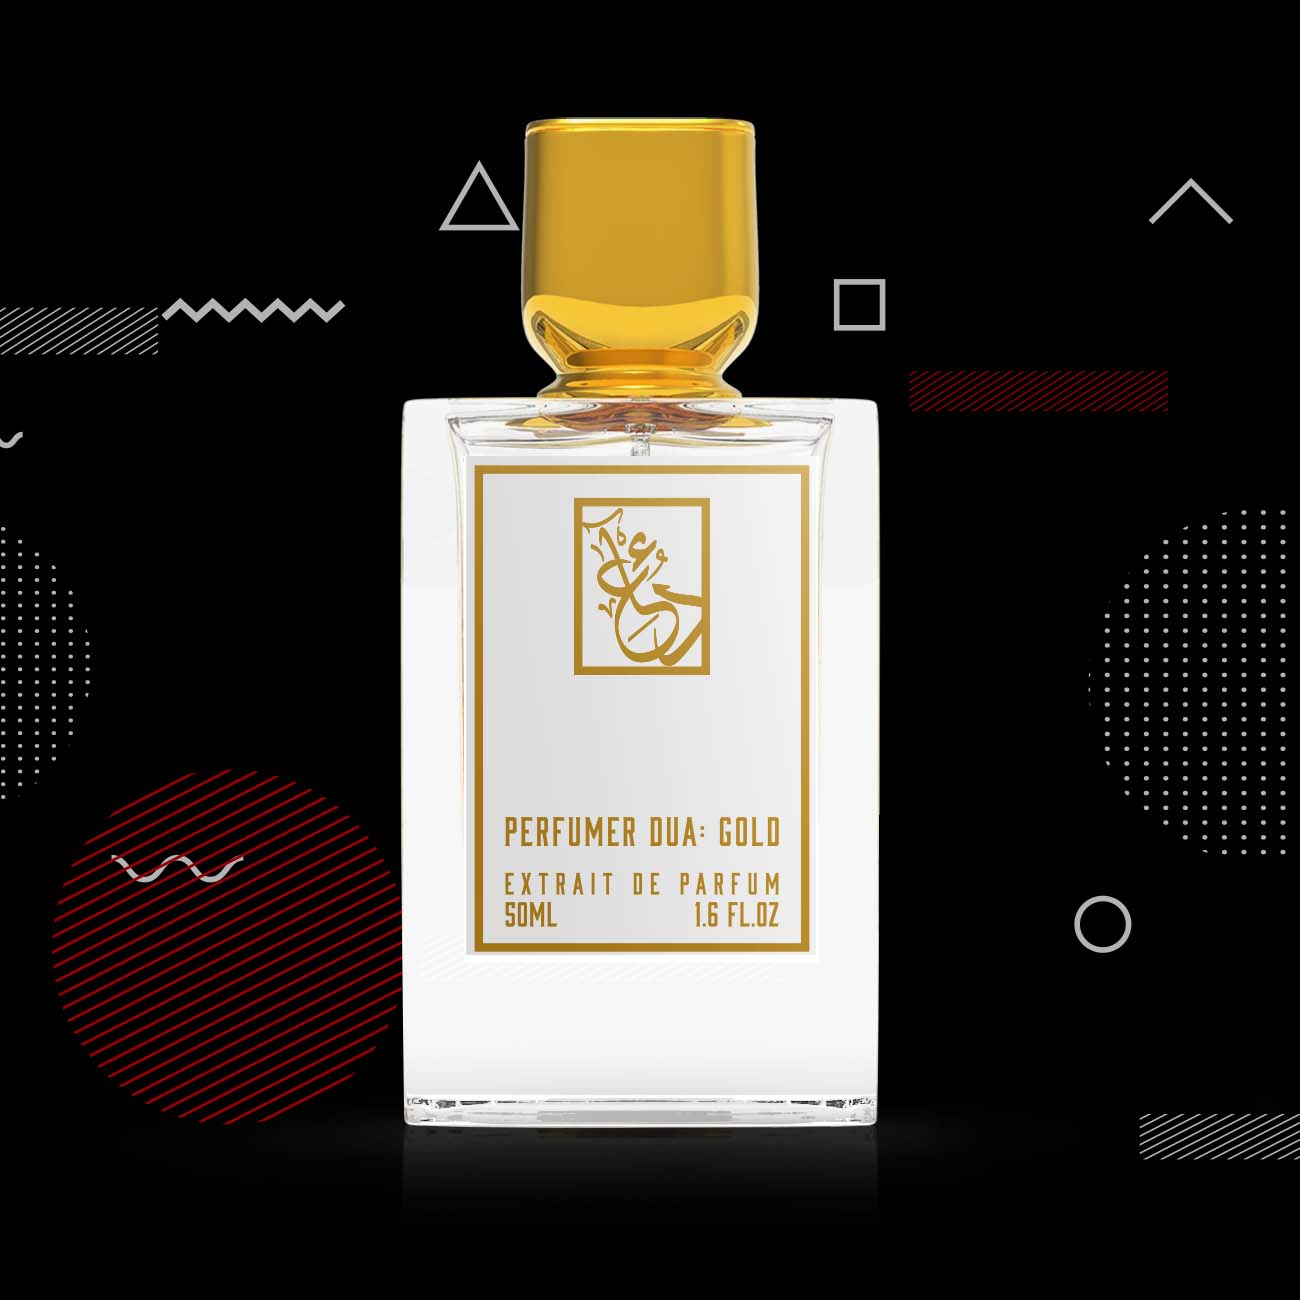 Perfumer Dua: Gold